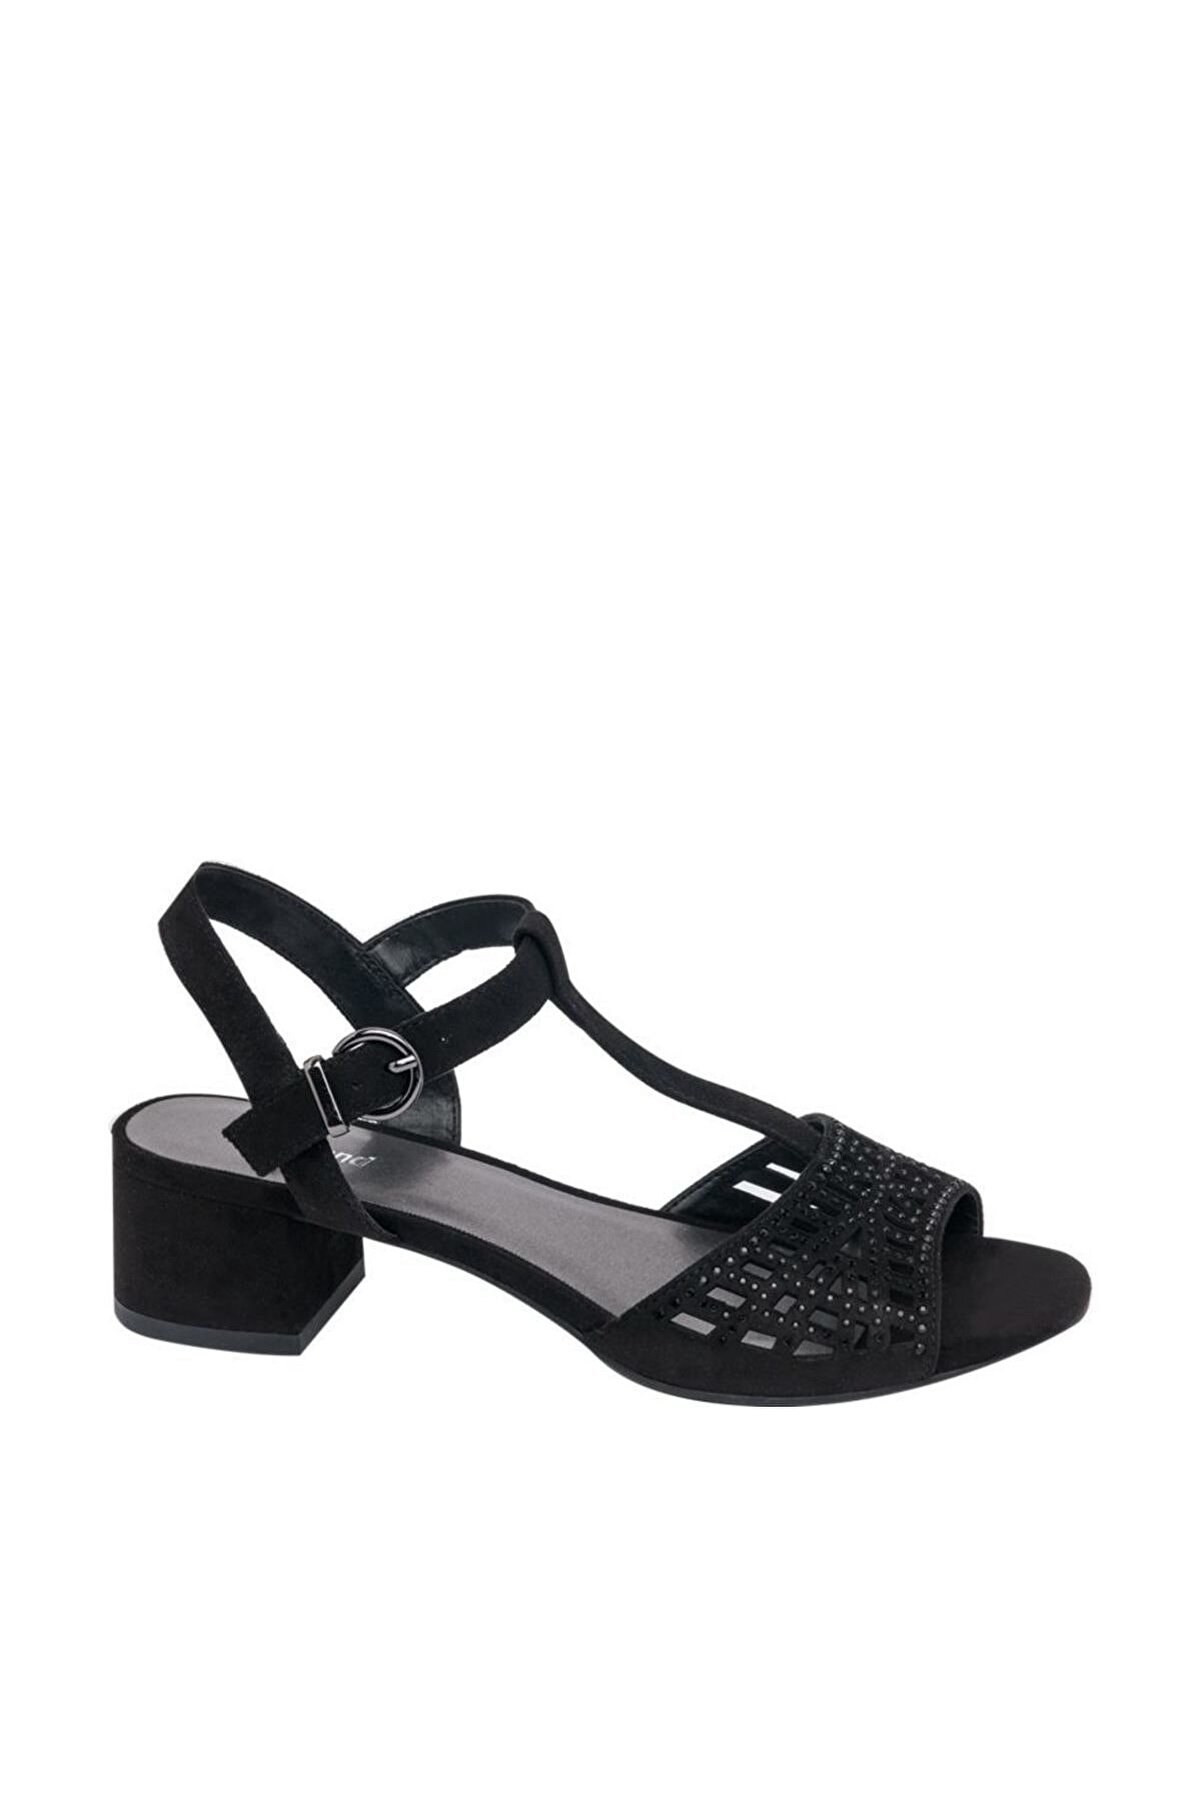 Graceland Deichmann Kadın Siyah Sandalet